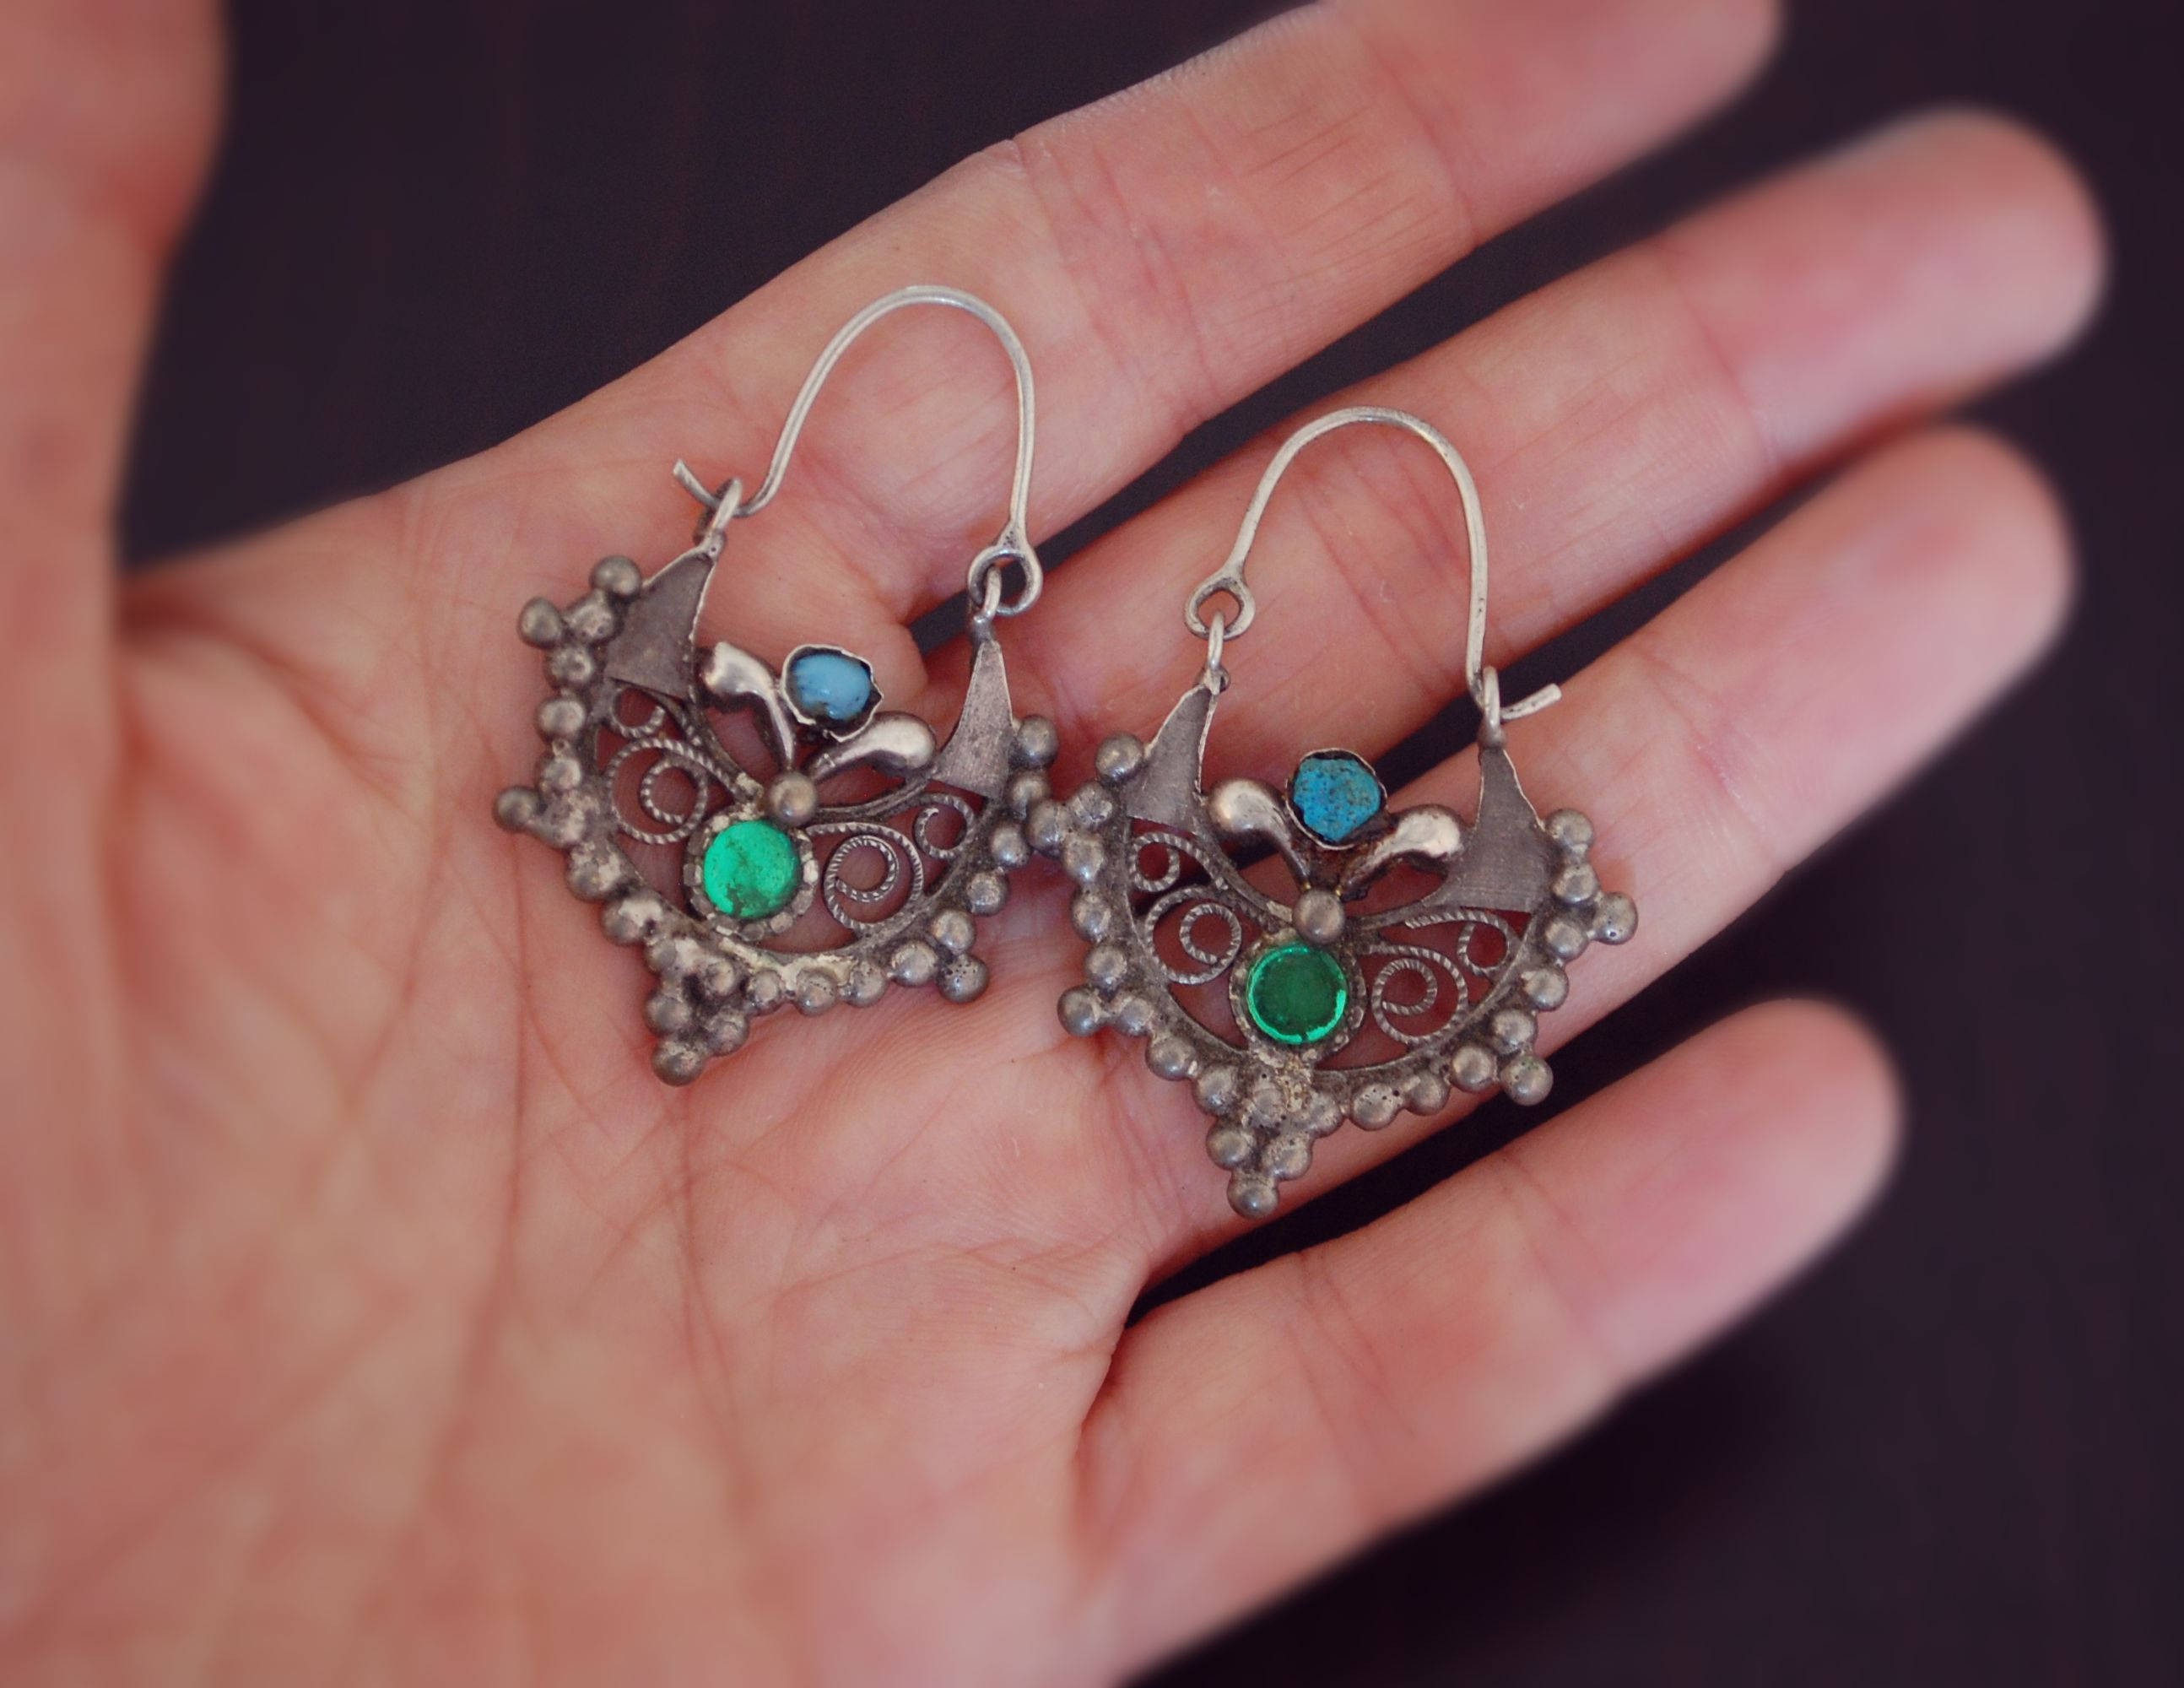 Antique Afghan Tribal Hoop Earrings with Colored Glass - Tribal Hoop Earrings - Afghan Hoop Earrings - Kuchi Earrings